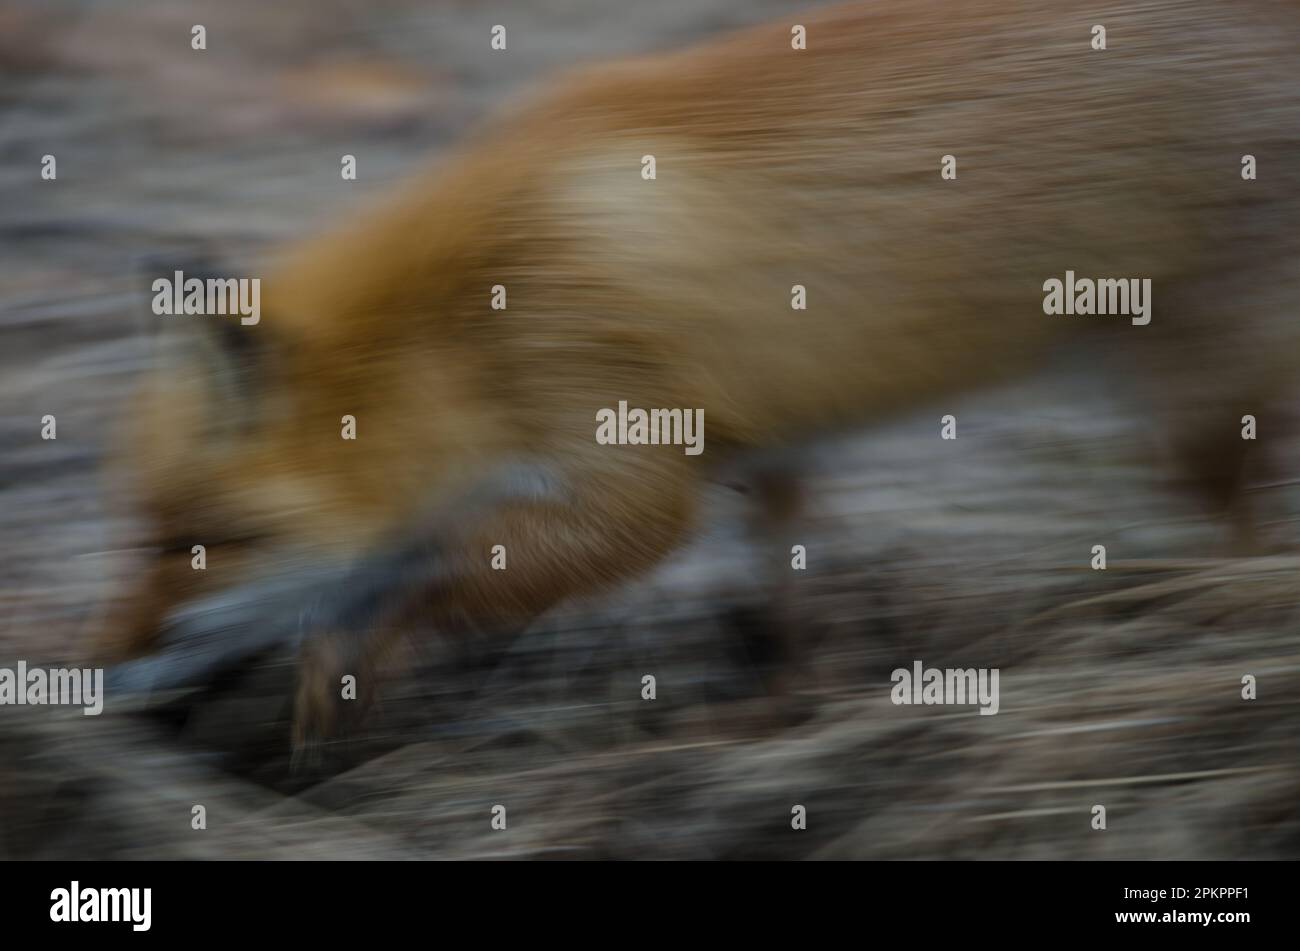 Ezo volpe rossa Vulpes vulpes schrenckii. Sfocatura dell'immagine per suggerire il movimento. Parco Nazionale di Akan Mashu. Hokkaido. Giappone. Foto Stock